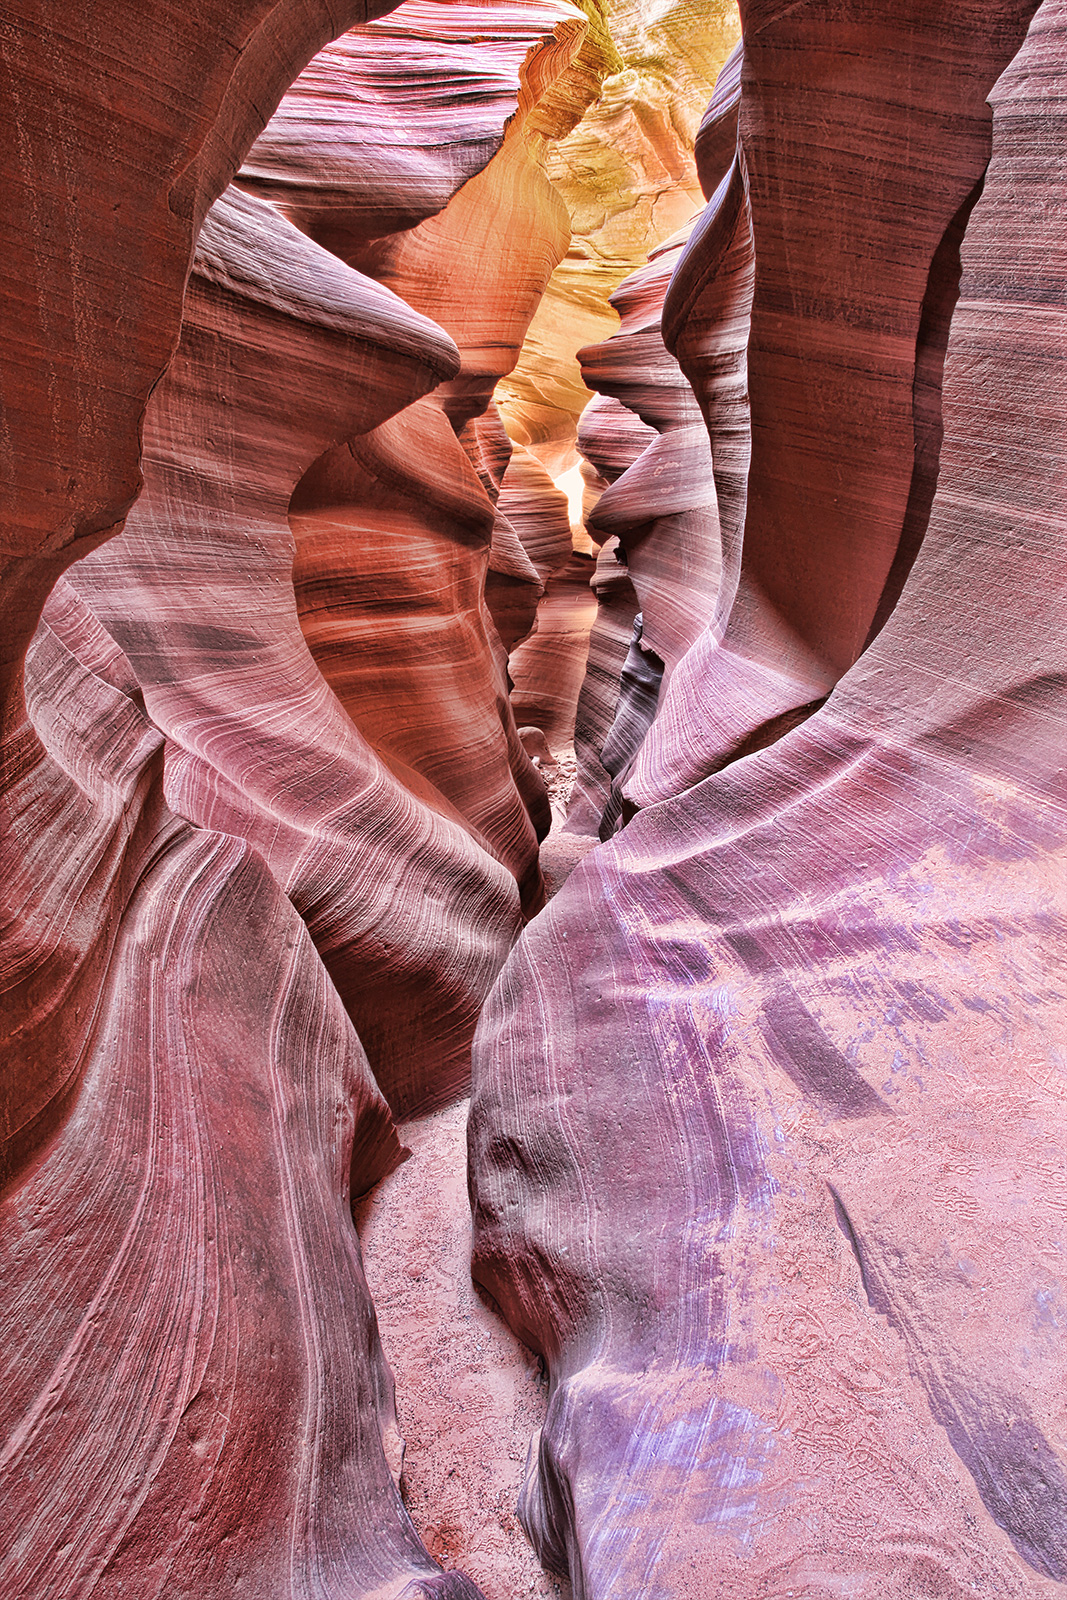 Arizona Photography Arizona Wall Decor Canyon Prints Antelope Canyon Photography Nature Wall Art Slot Canyons of Arizona